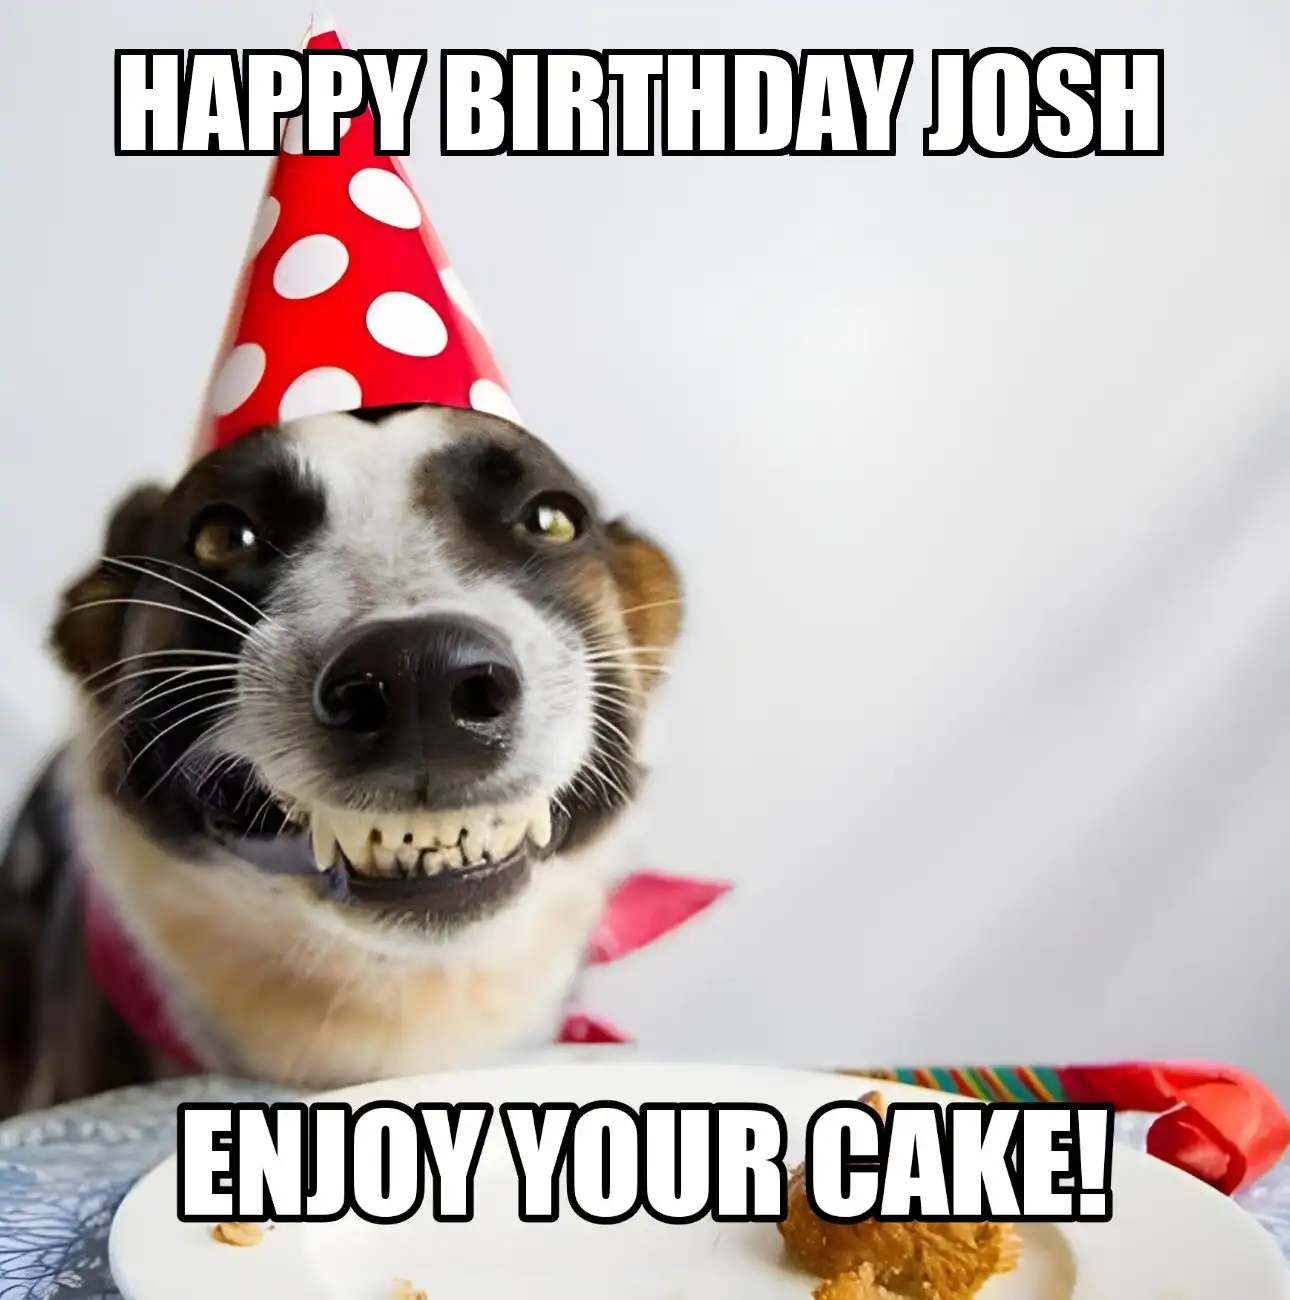 Happy Birthday Josh Enjoy Your Cake Dog Meme